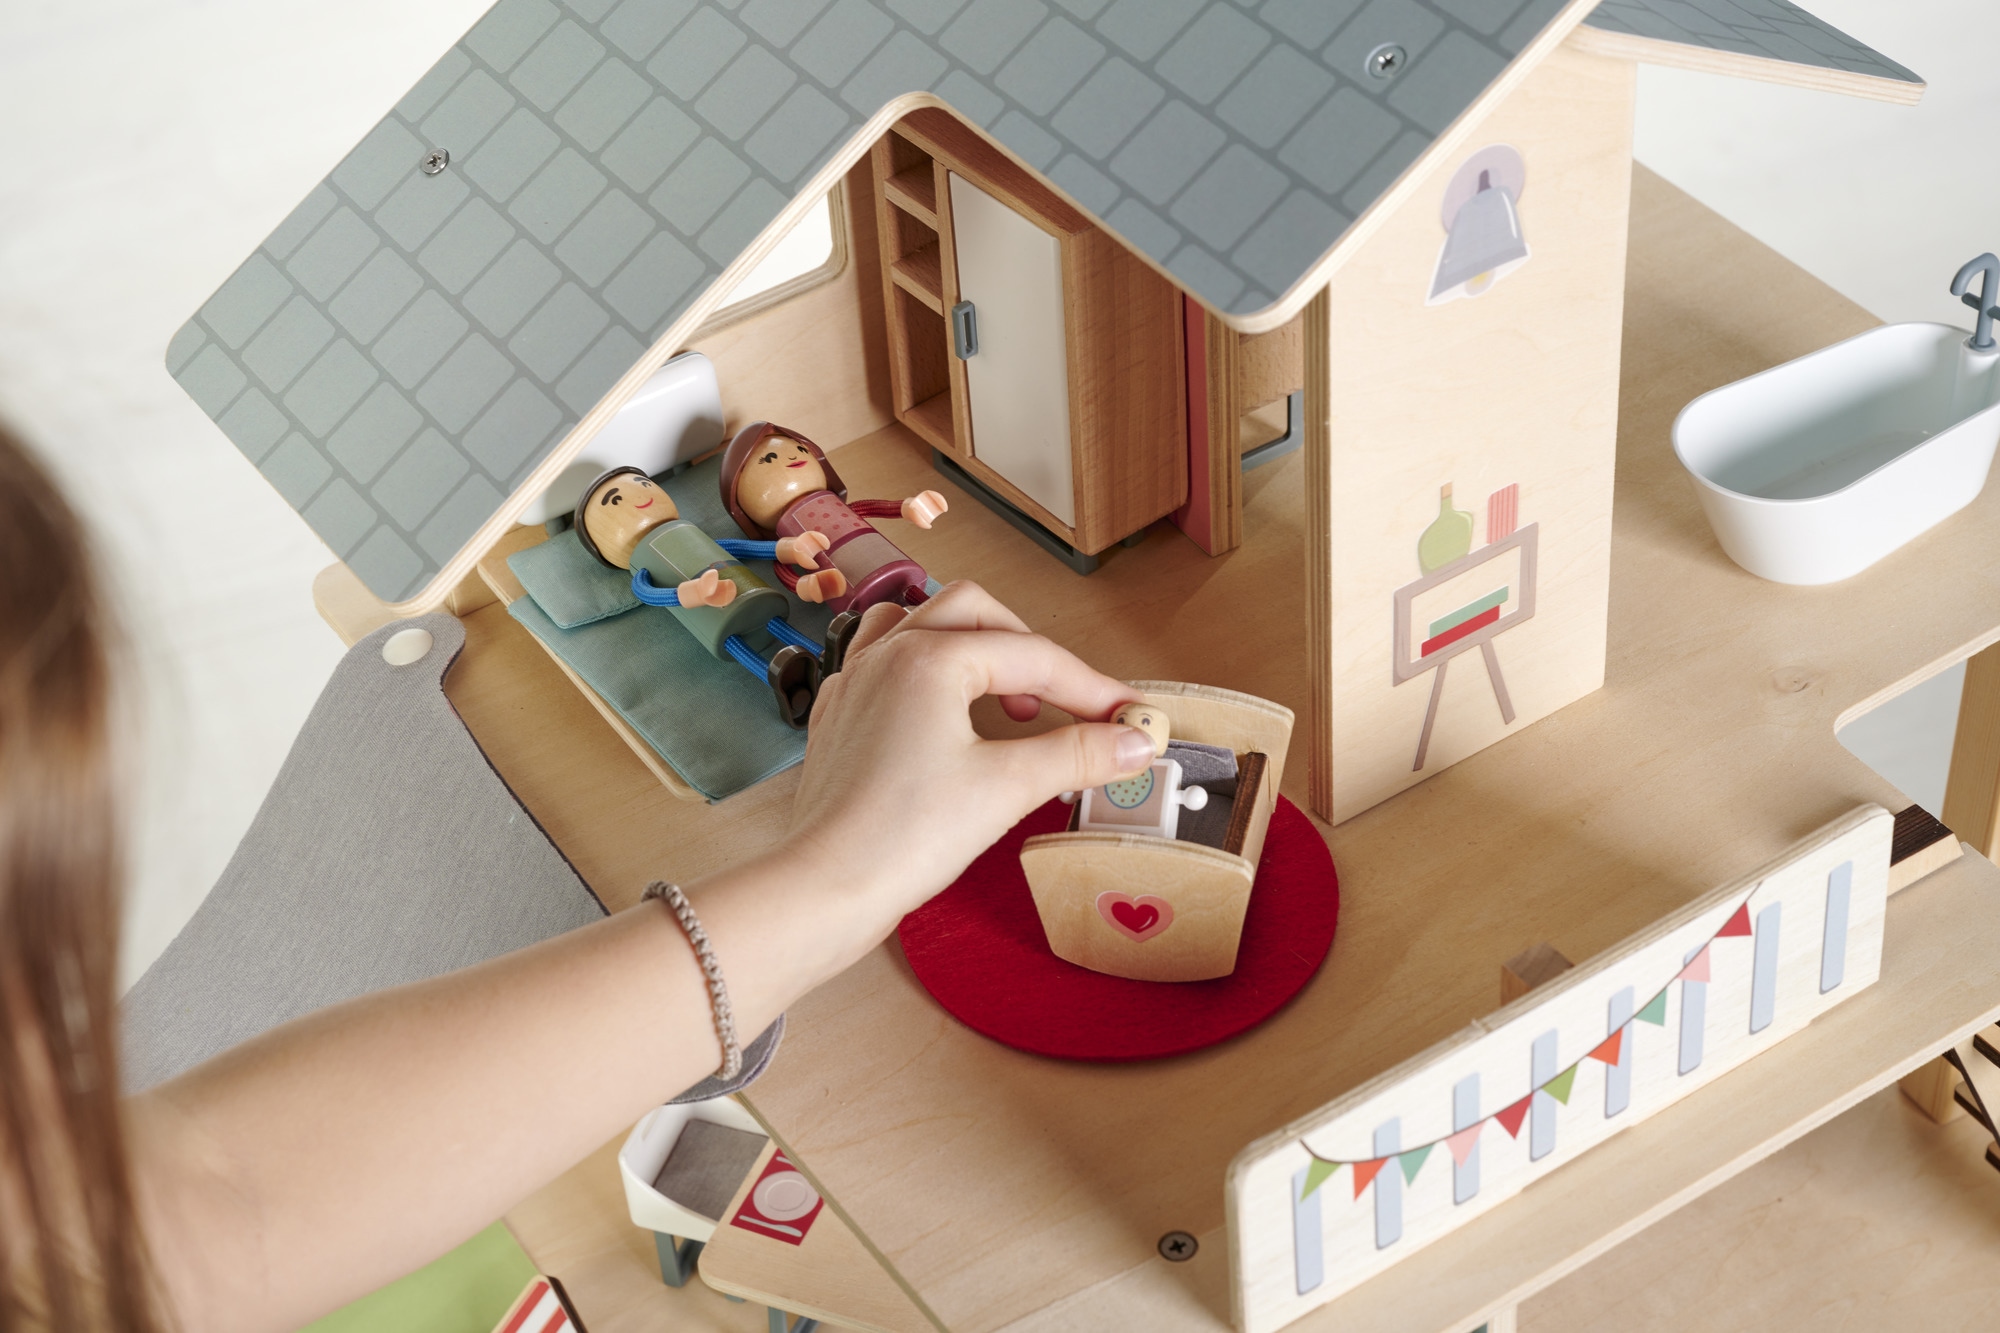 Eichhorn Puppenhaus, (25 tlg.), aus Holz mit Möbeln und Spielfiguren